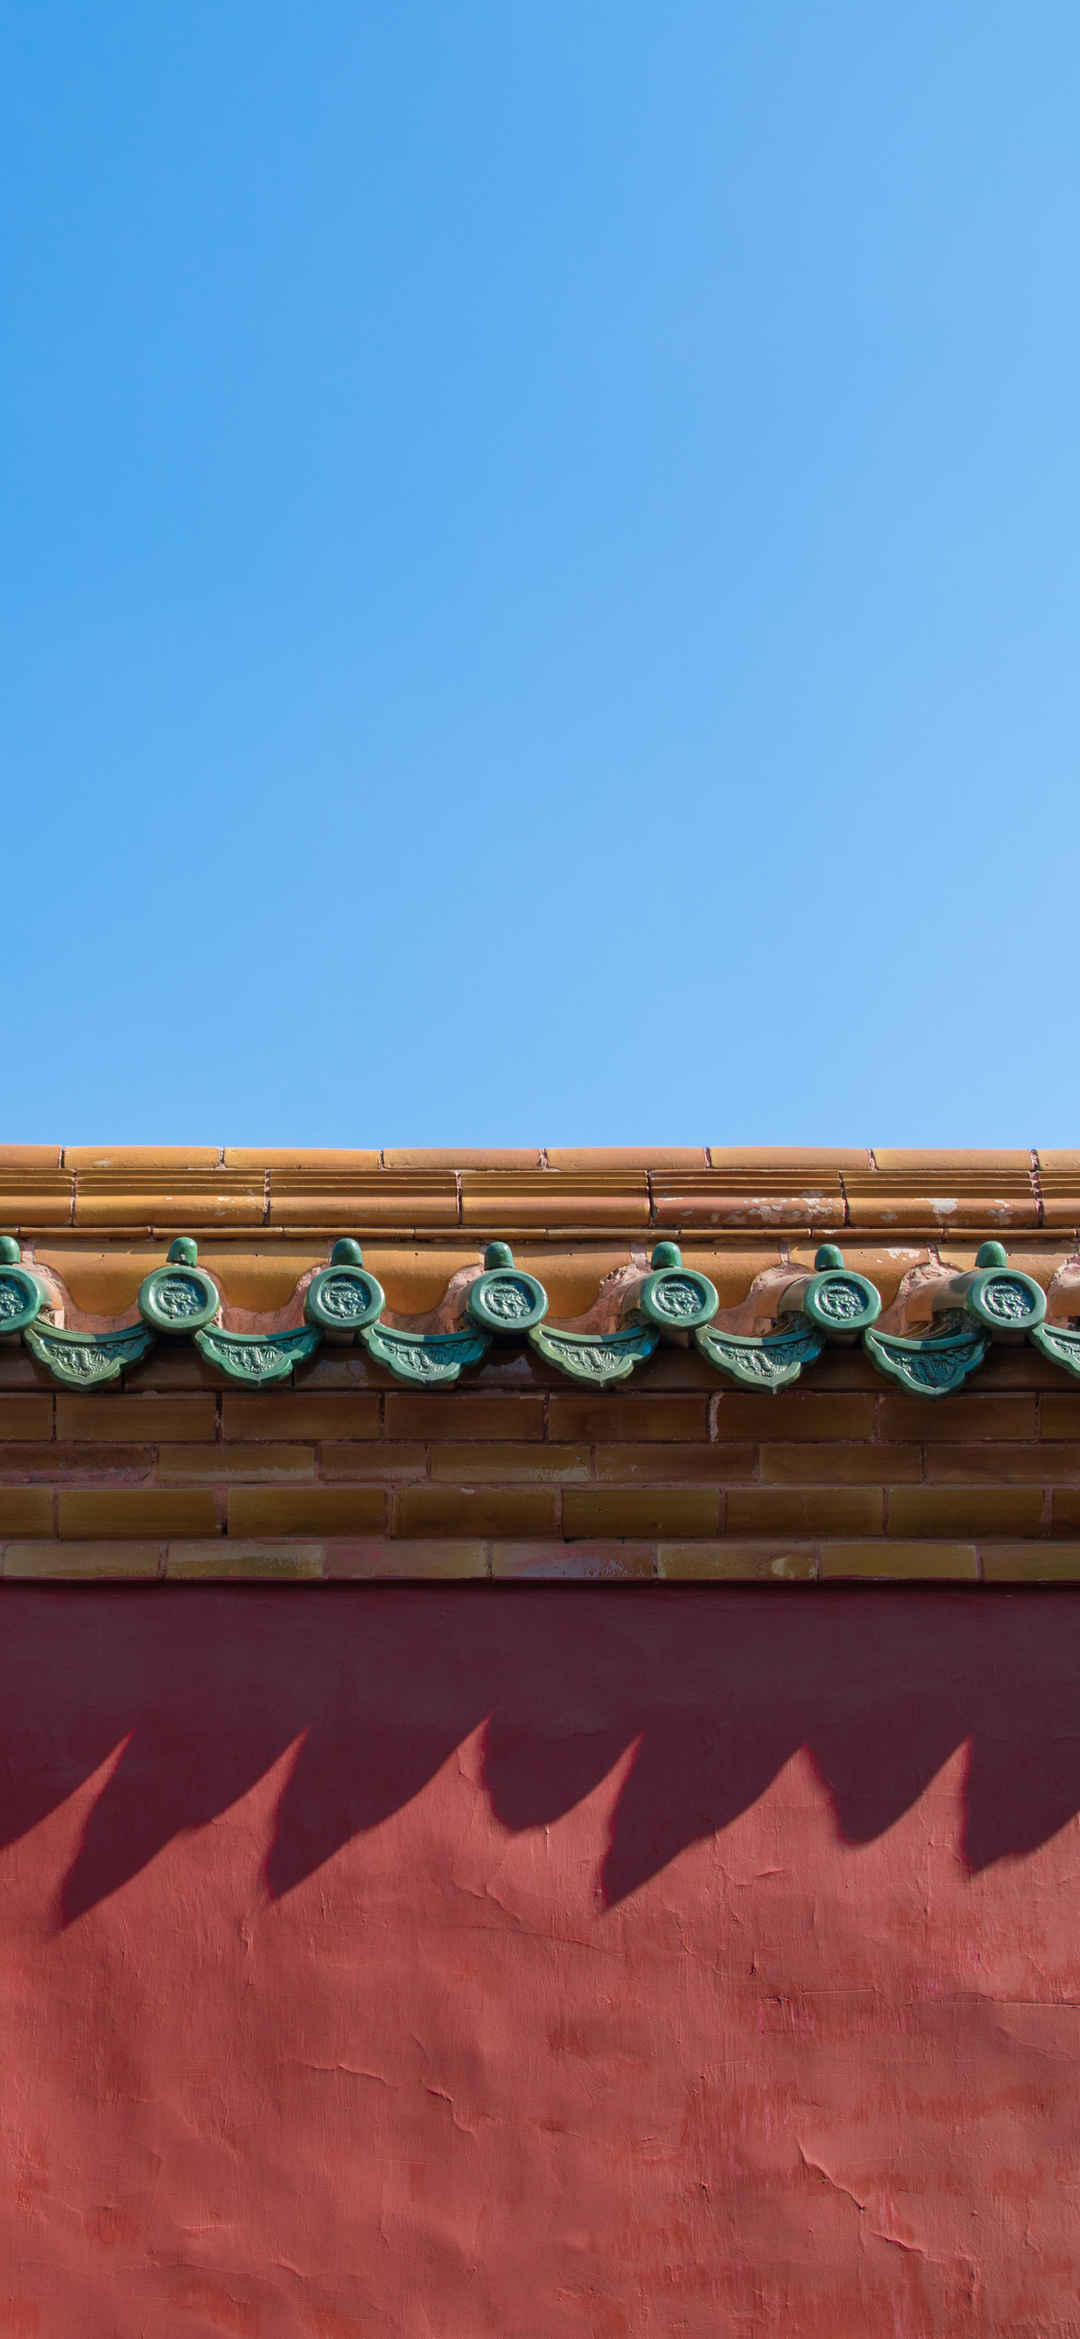 北京故宫朱墙绿瓦风景壁纸-